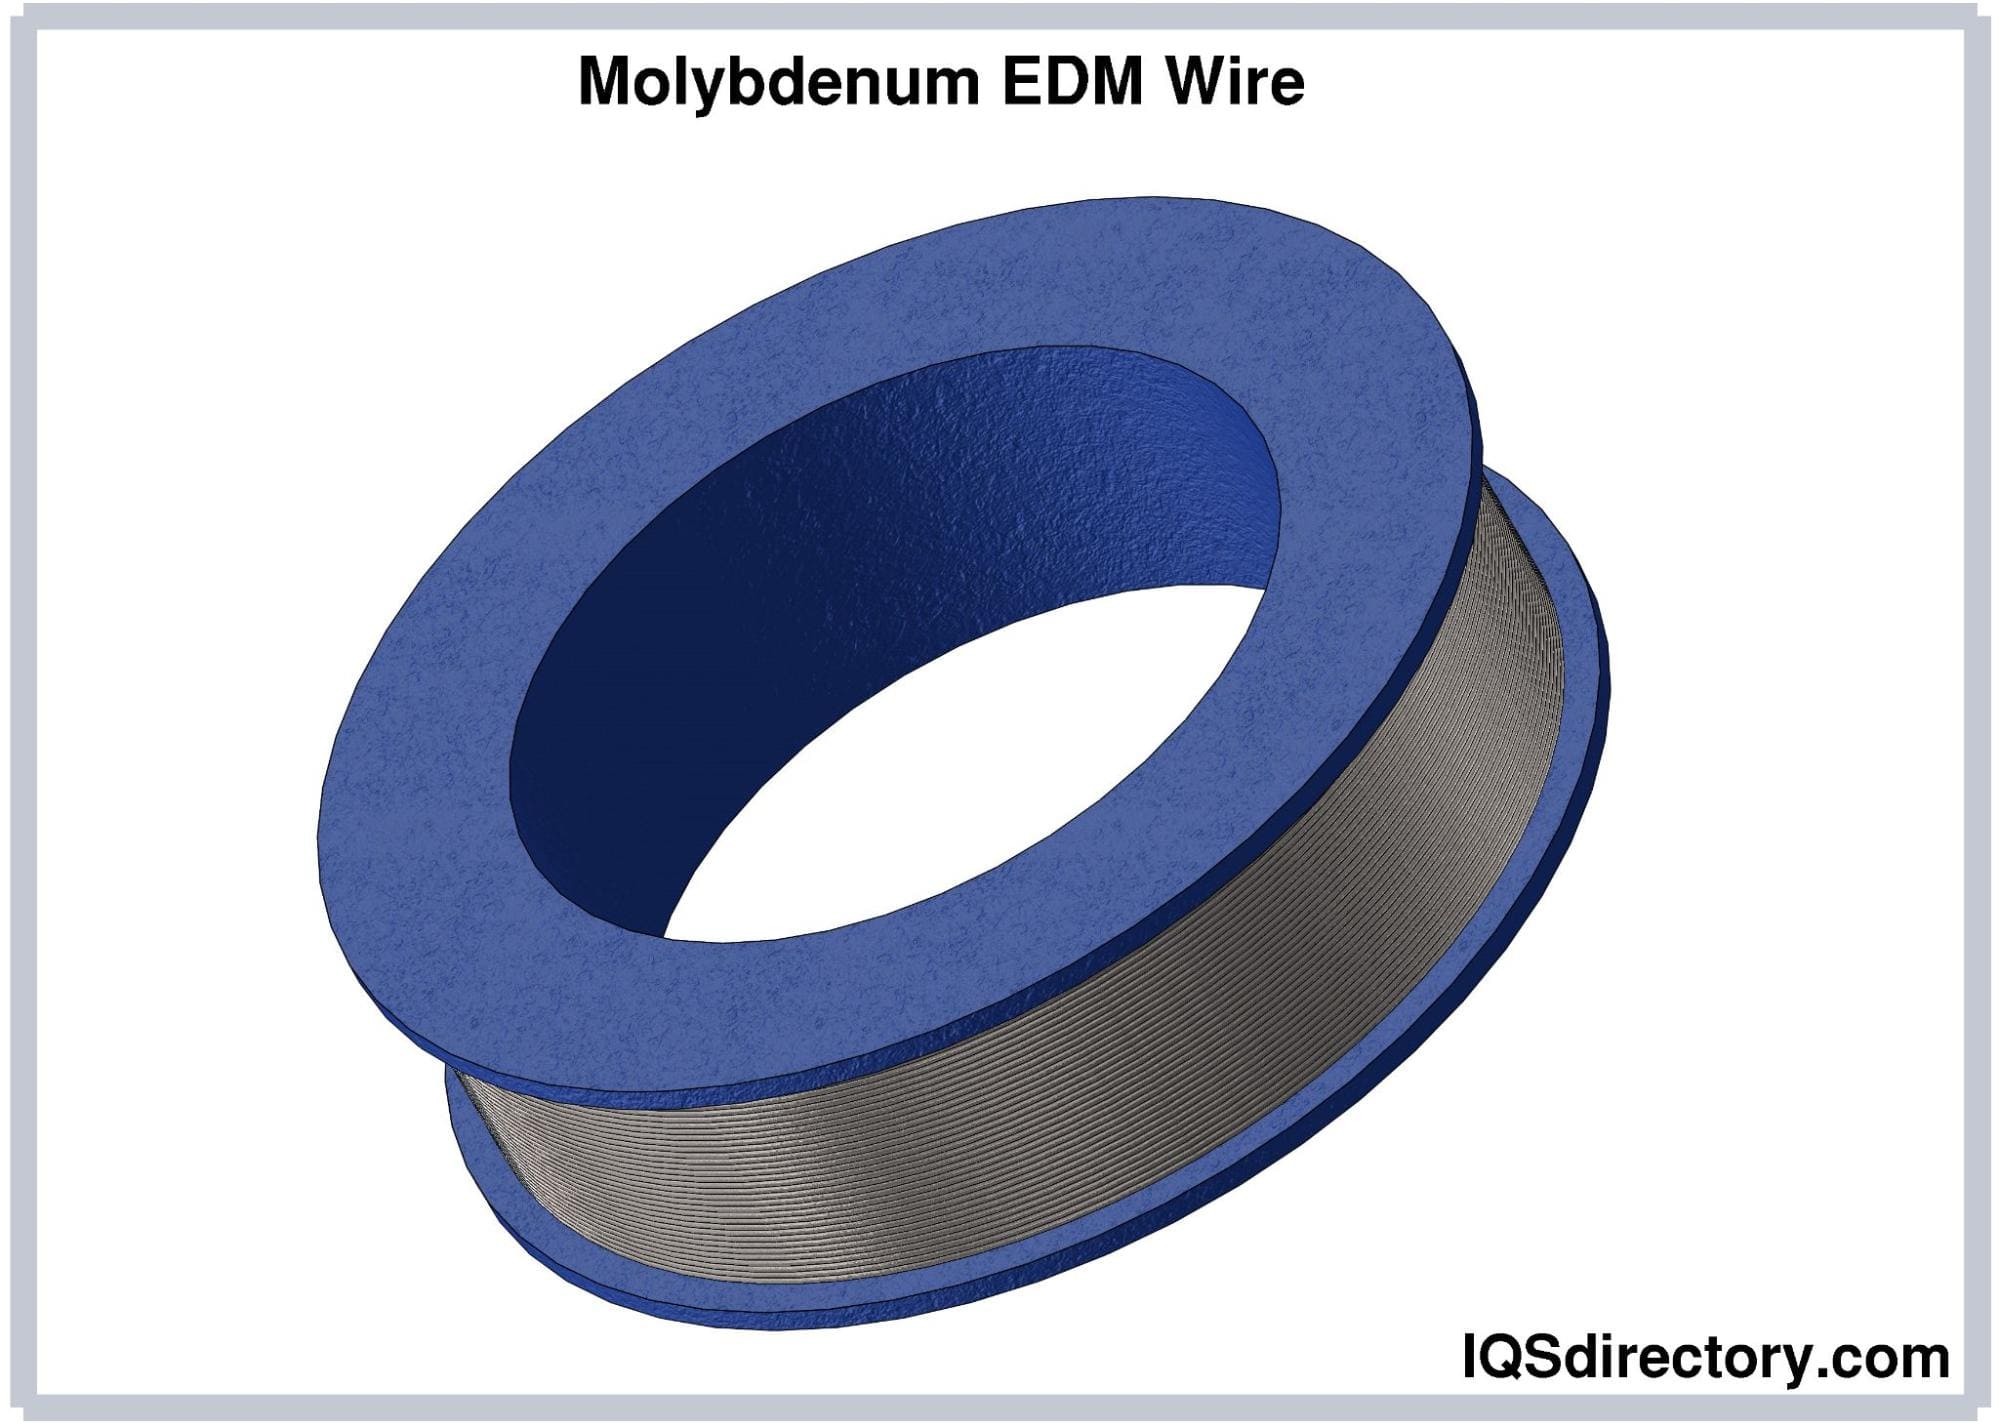 Molybdenum EDM Wire